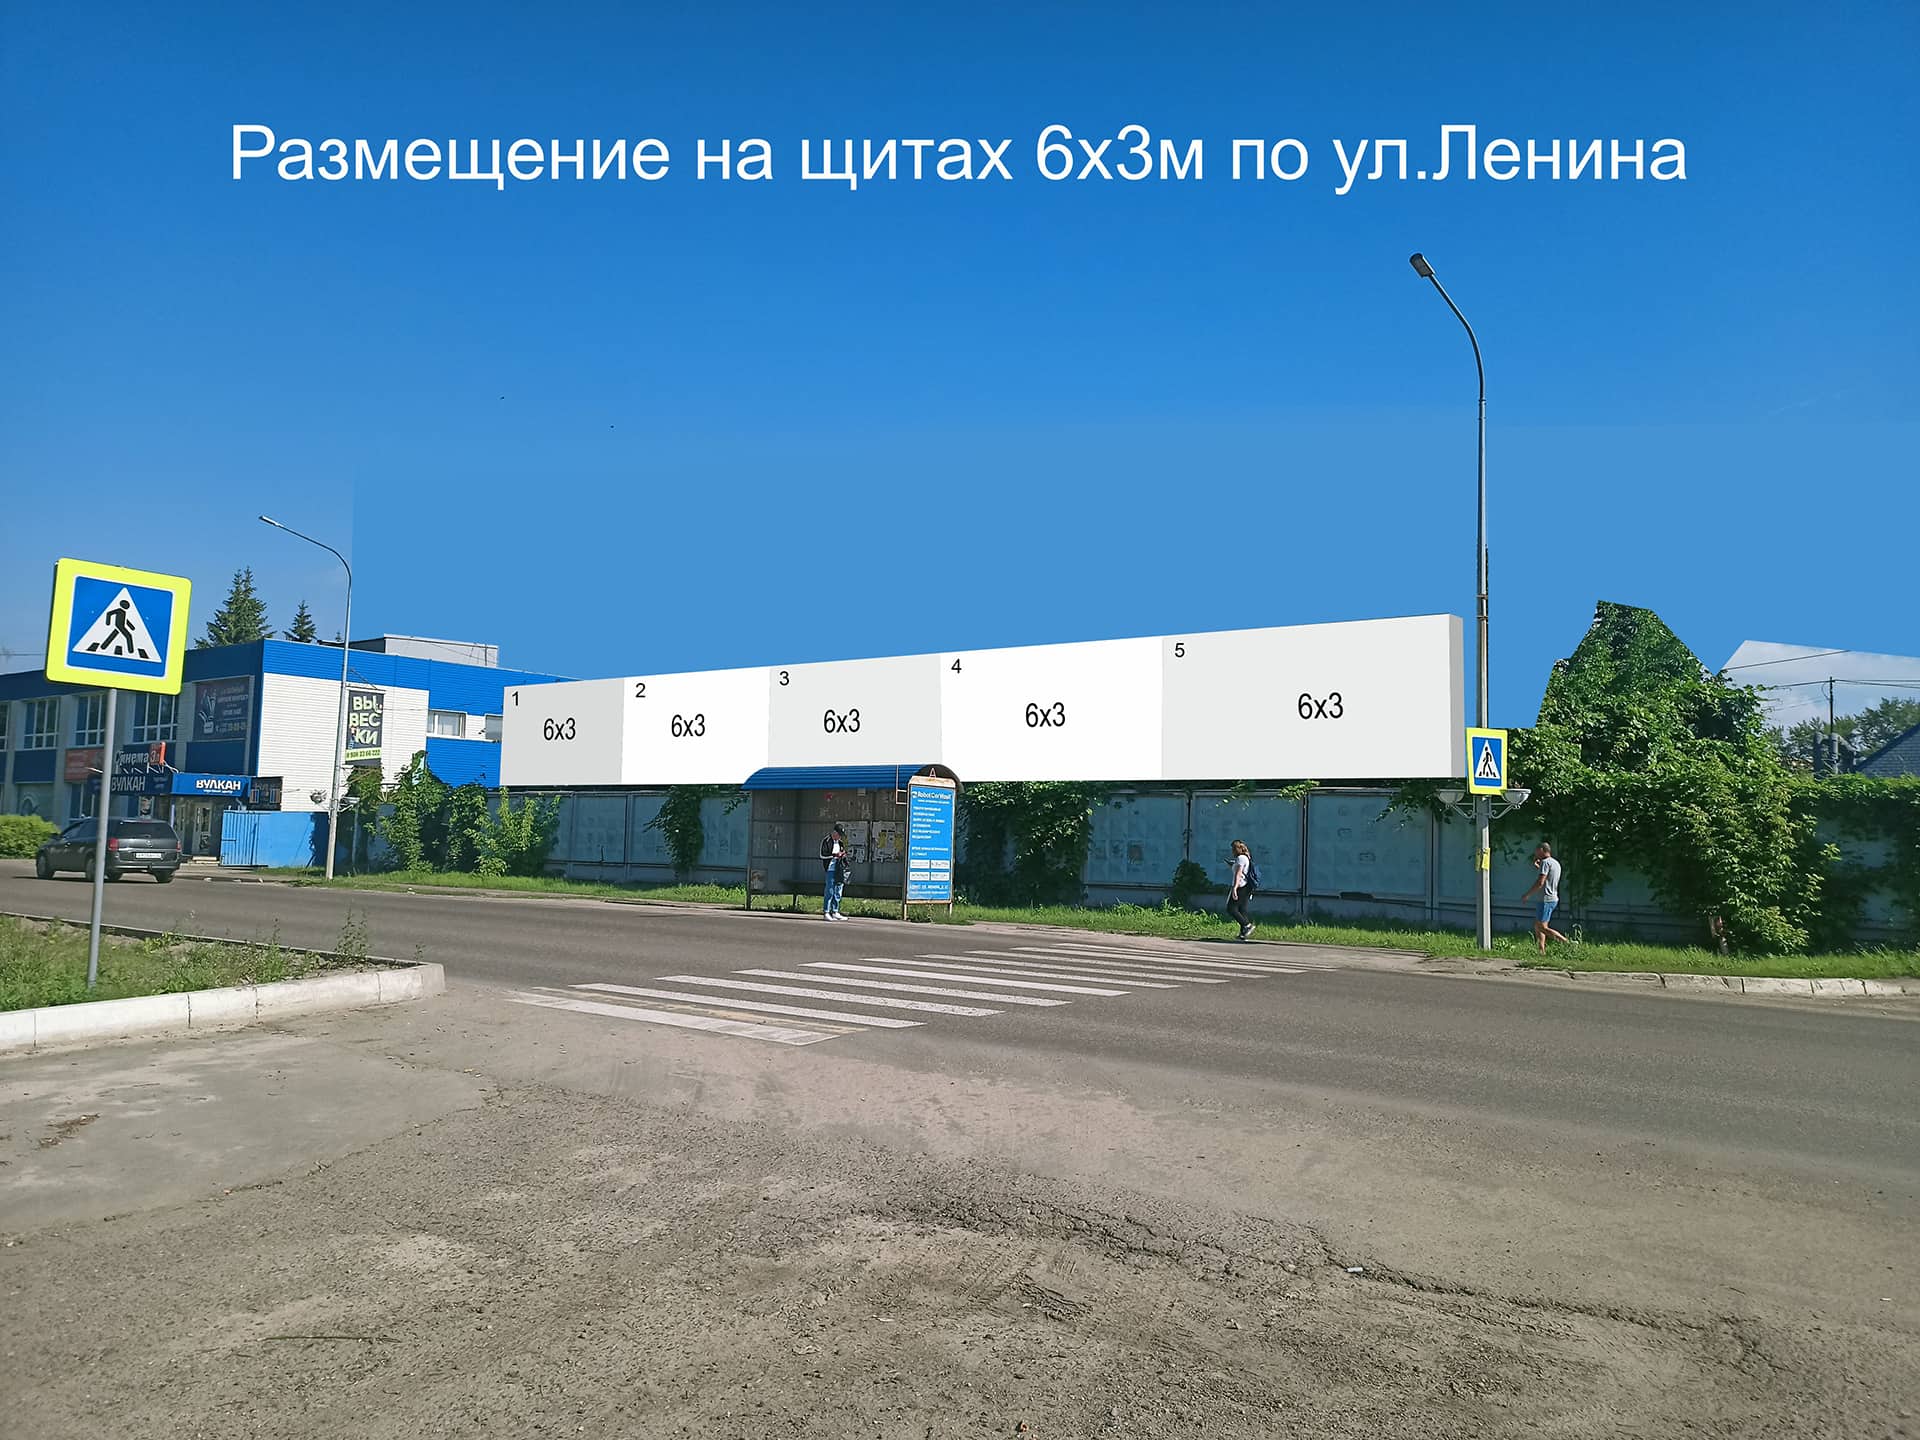 Схема рекламных мест на линейке щитов по ул. Ленина, 44